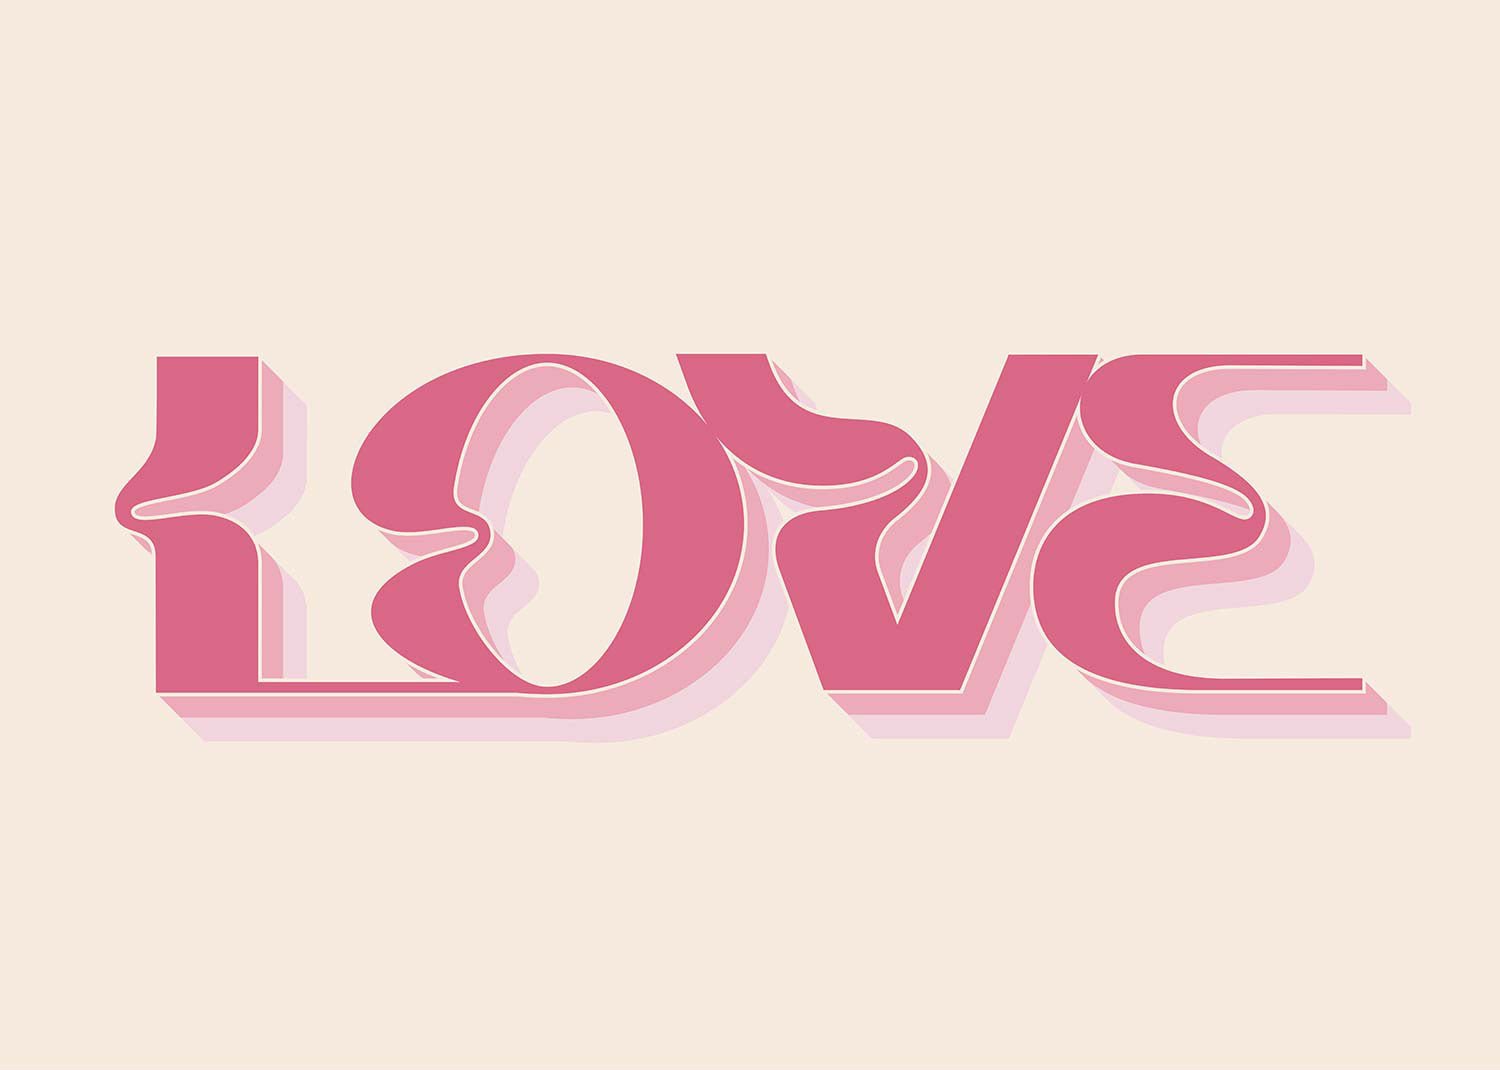 Wavy Love Typography Print